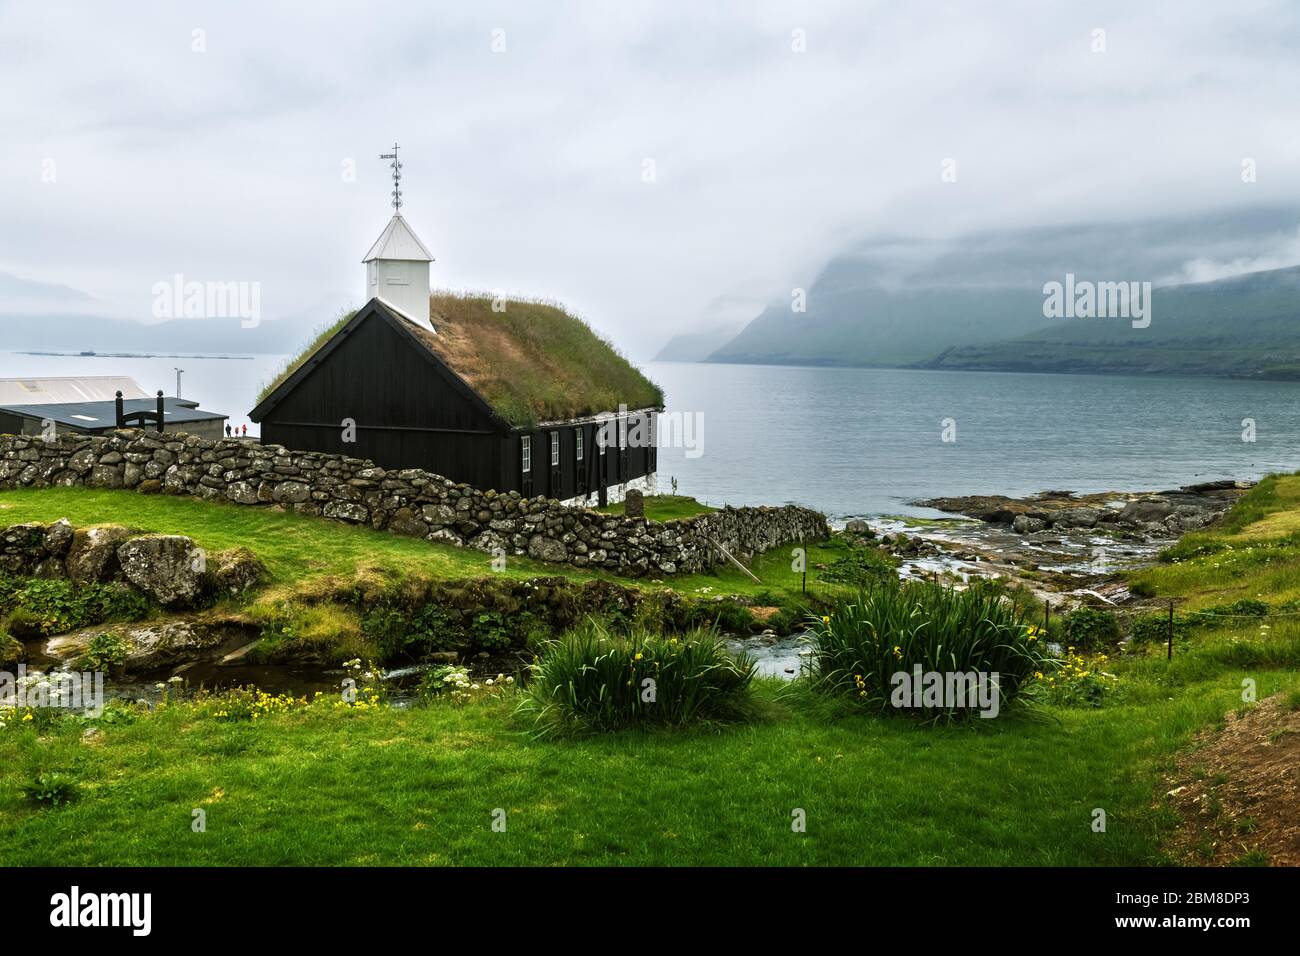 Vista estiva della tradizionale chiesa in cima a un manto erboso nel villaggio di faroese. Paesaggio di bellezza con fiordo foggy e alte montagne. Isola di Streymoy, Isole Faroe, Danimarca. Foto Stock